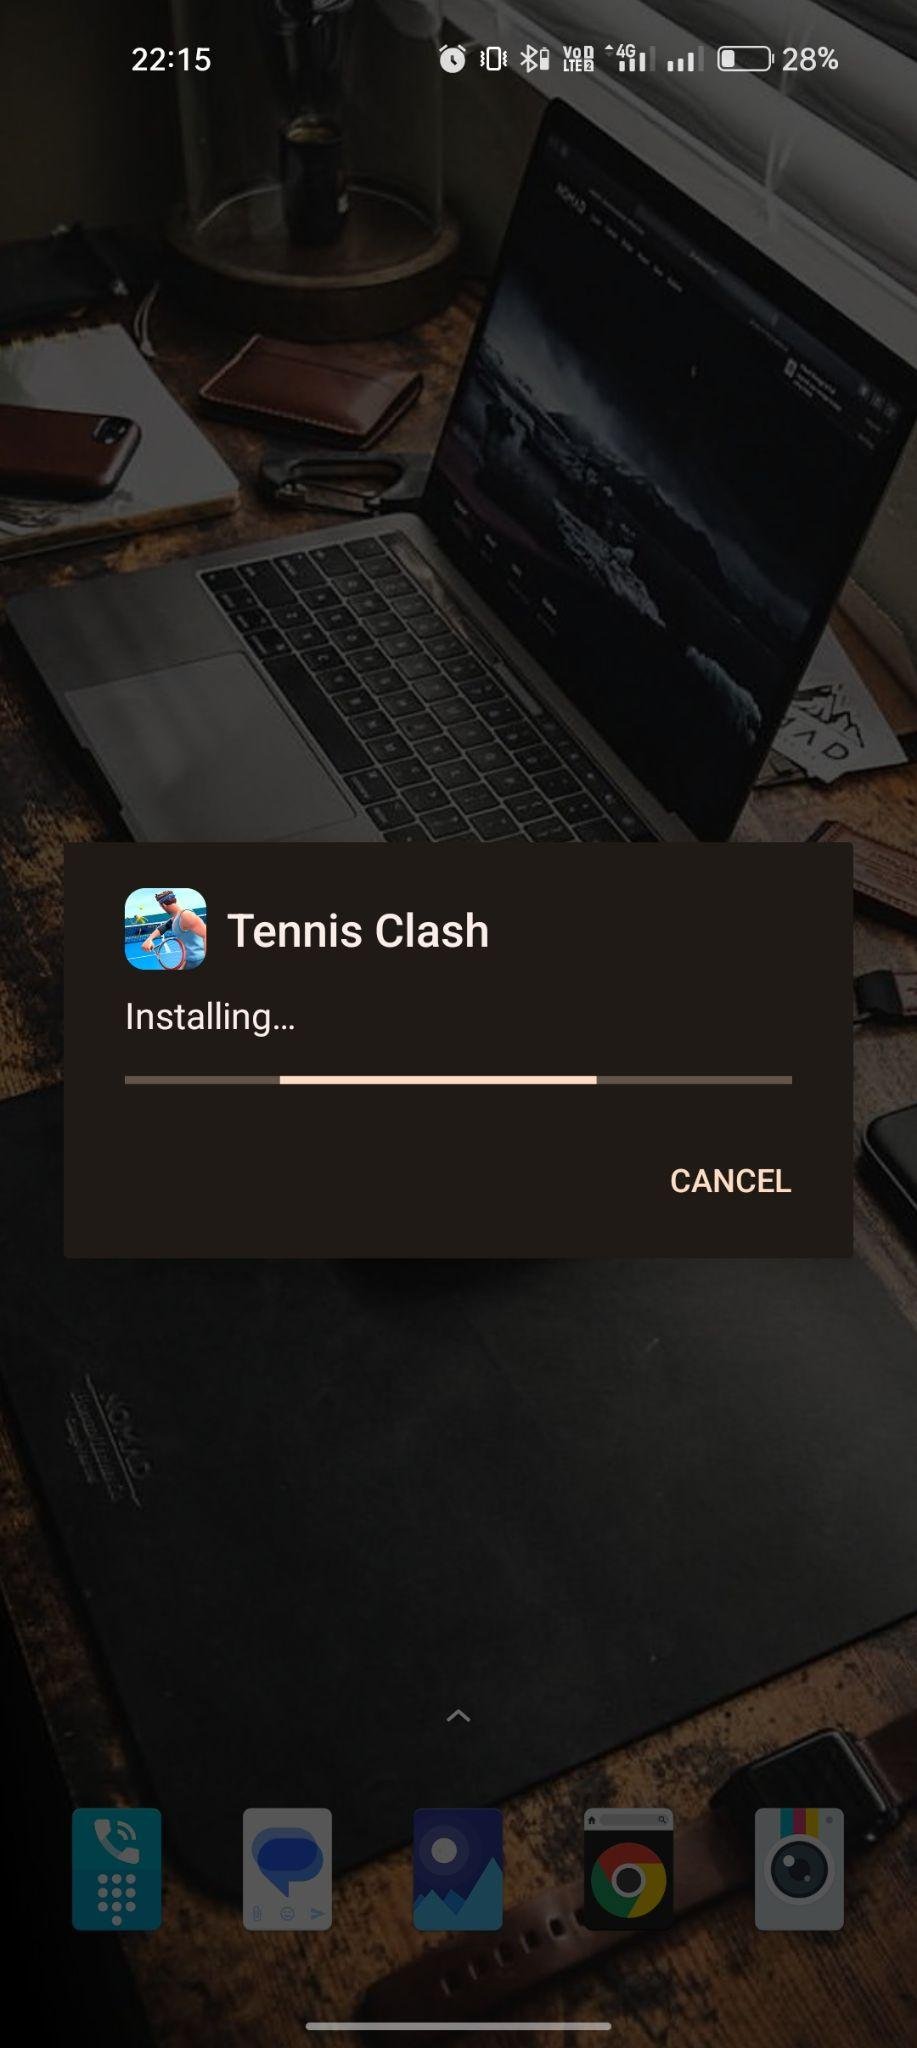 Tennis Clash apk installing